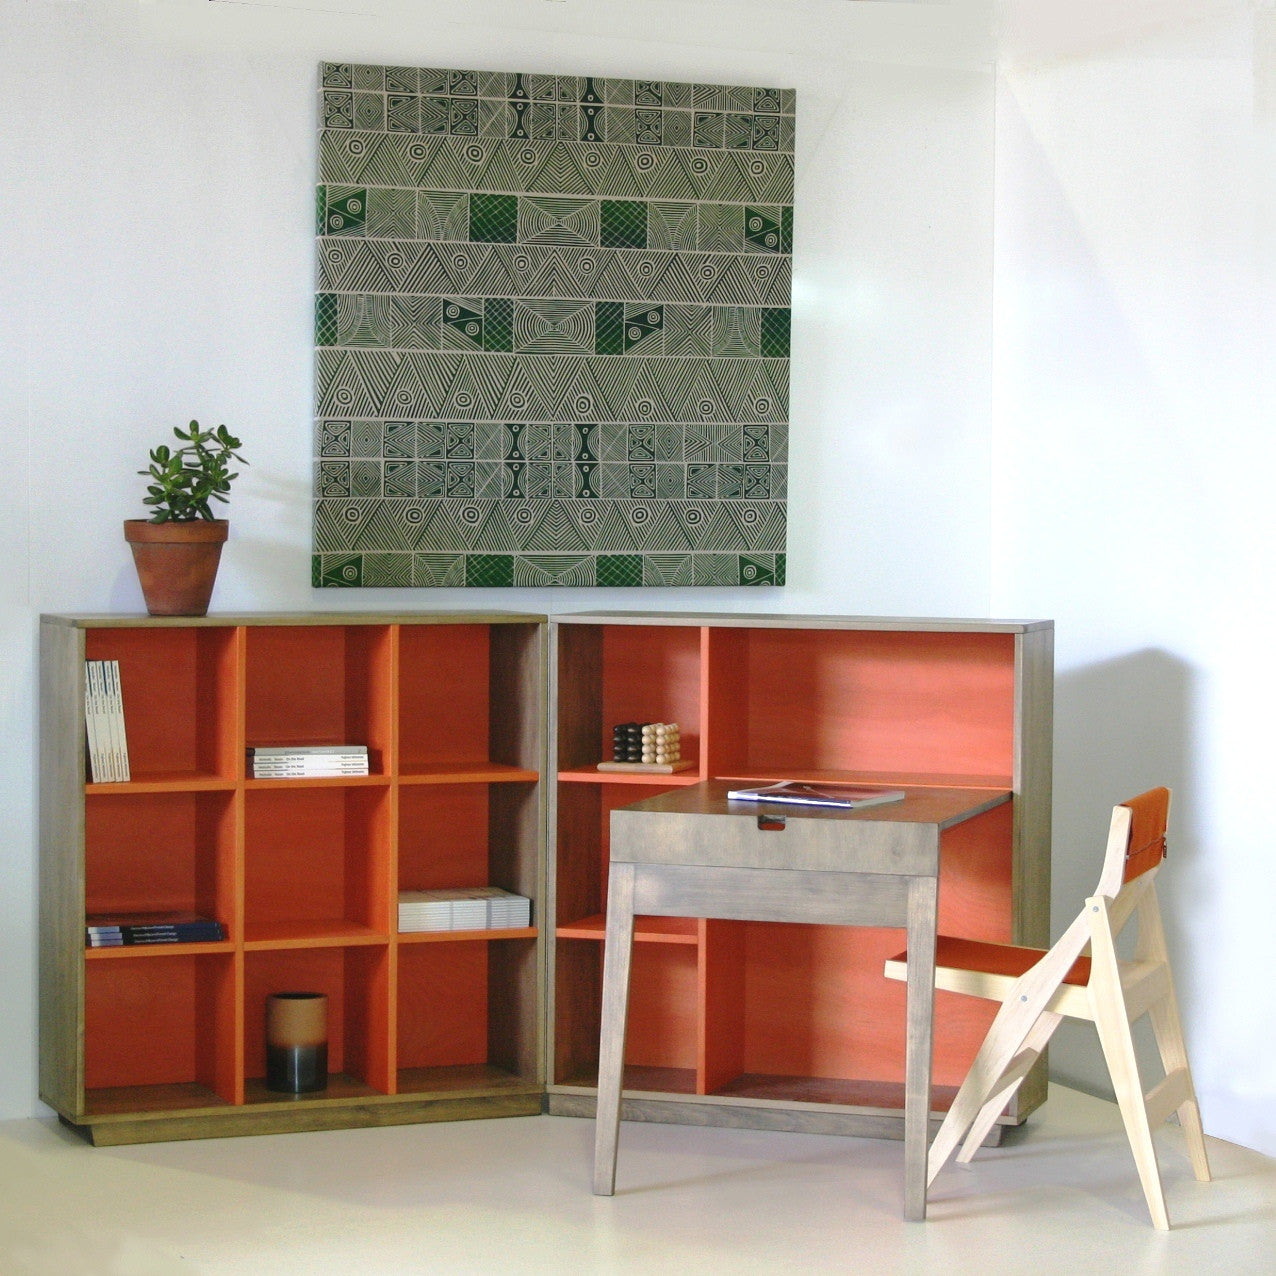 trans-form-it bookcase/desk